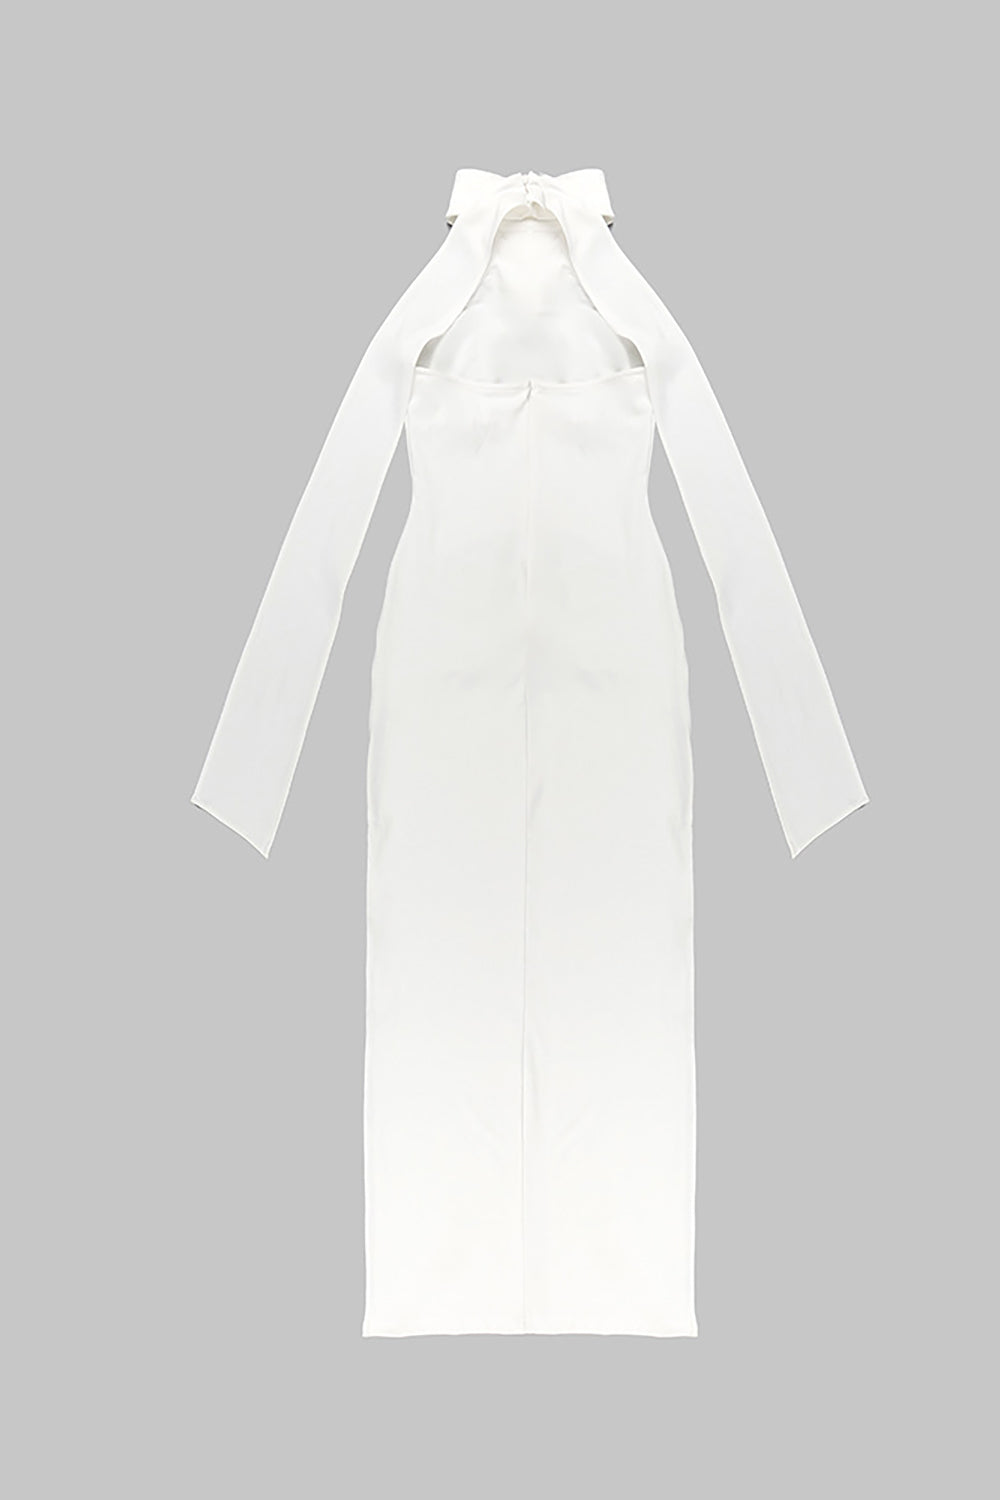 Vestido frente única com abertura lateral em flores maxi 3D em branco